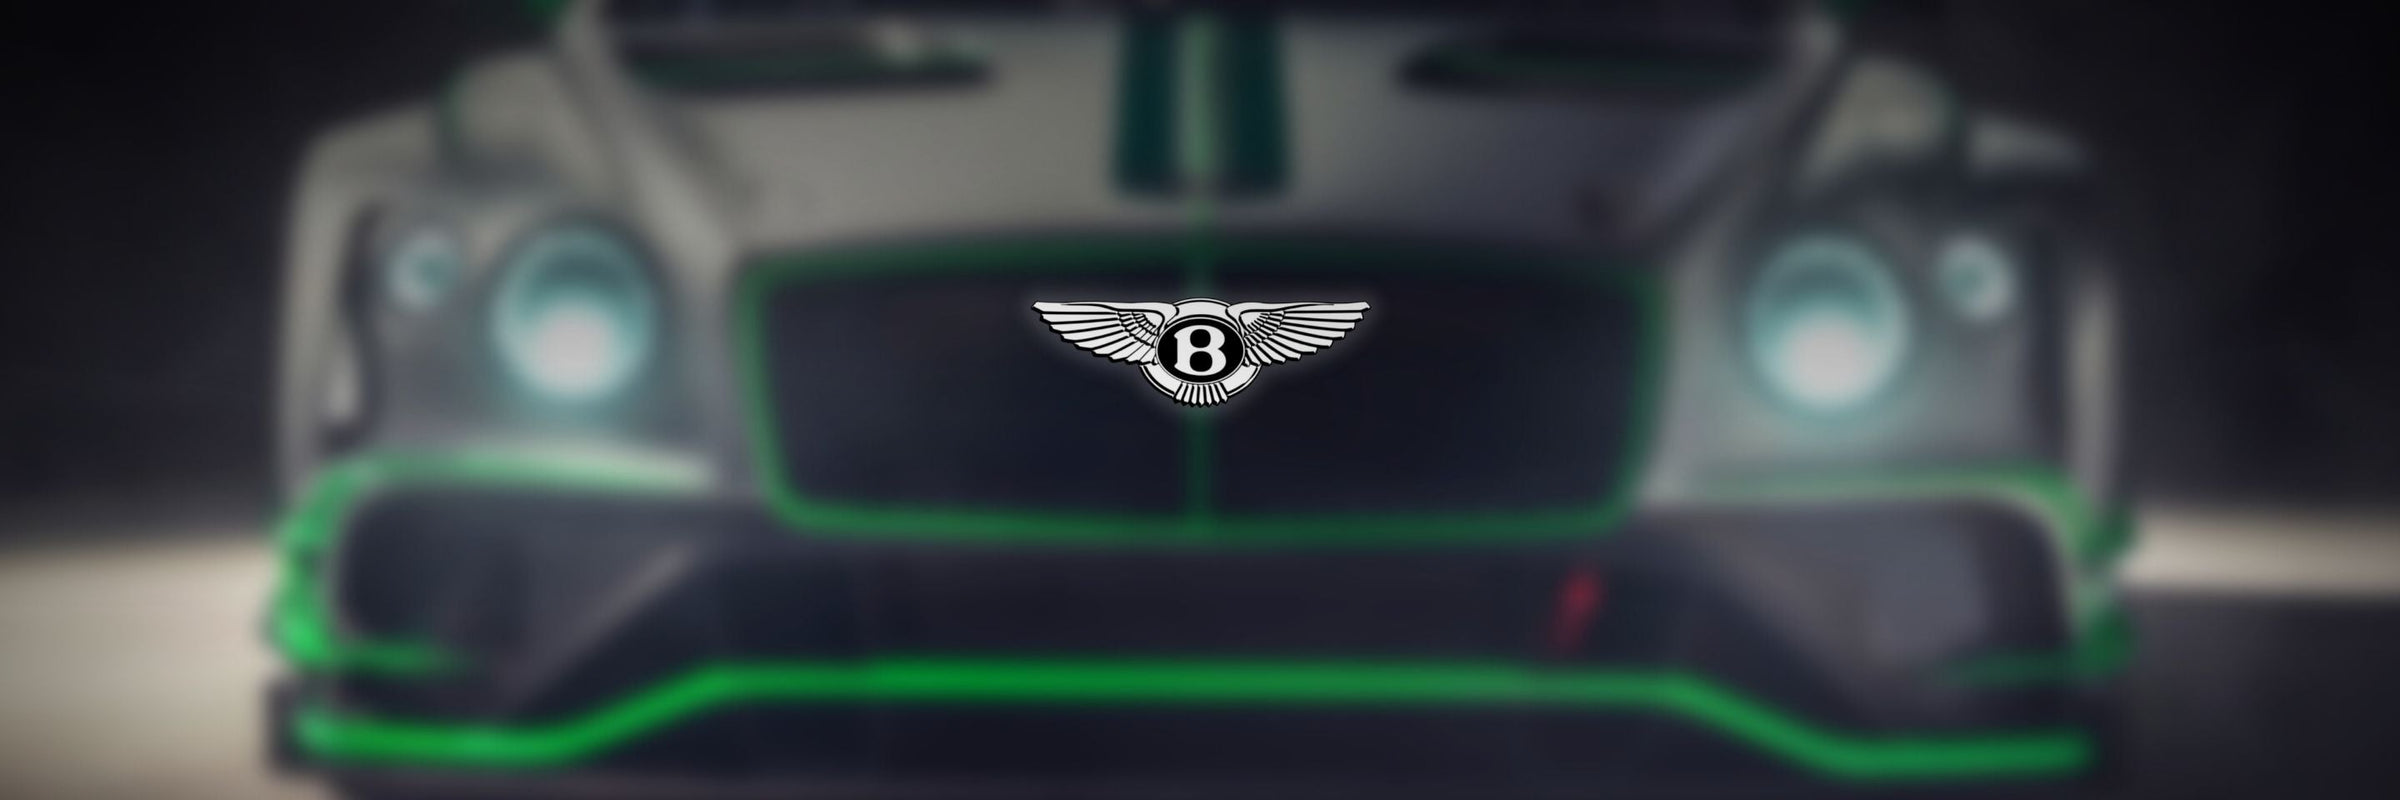 Bentley - F1 and Motorpsort Offficial Merchandise - Fueler store